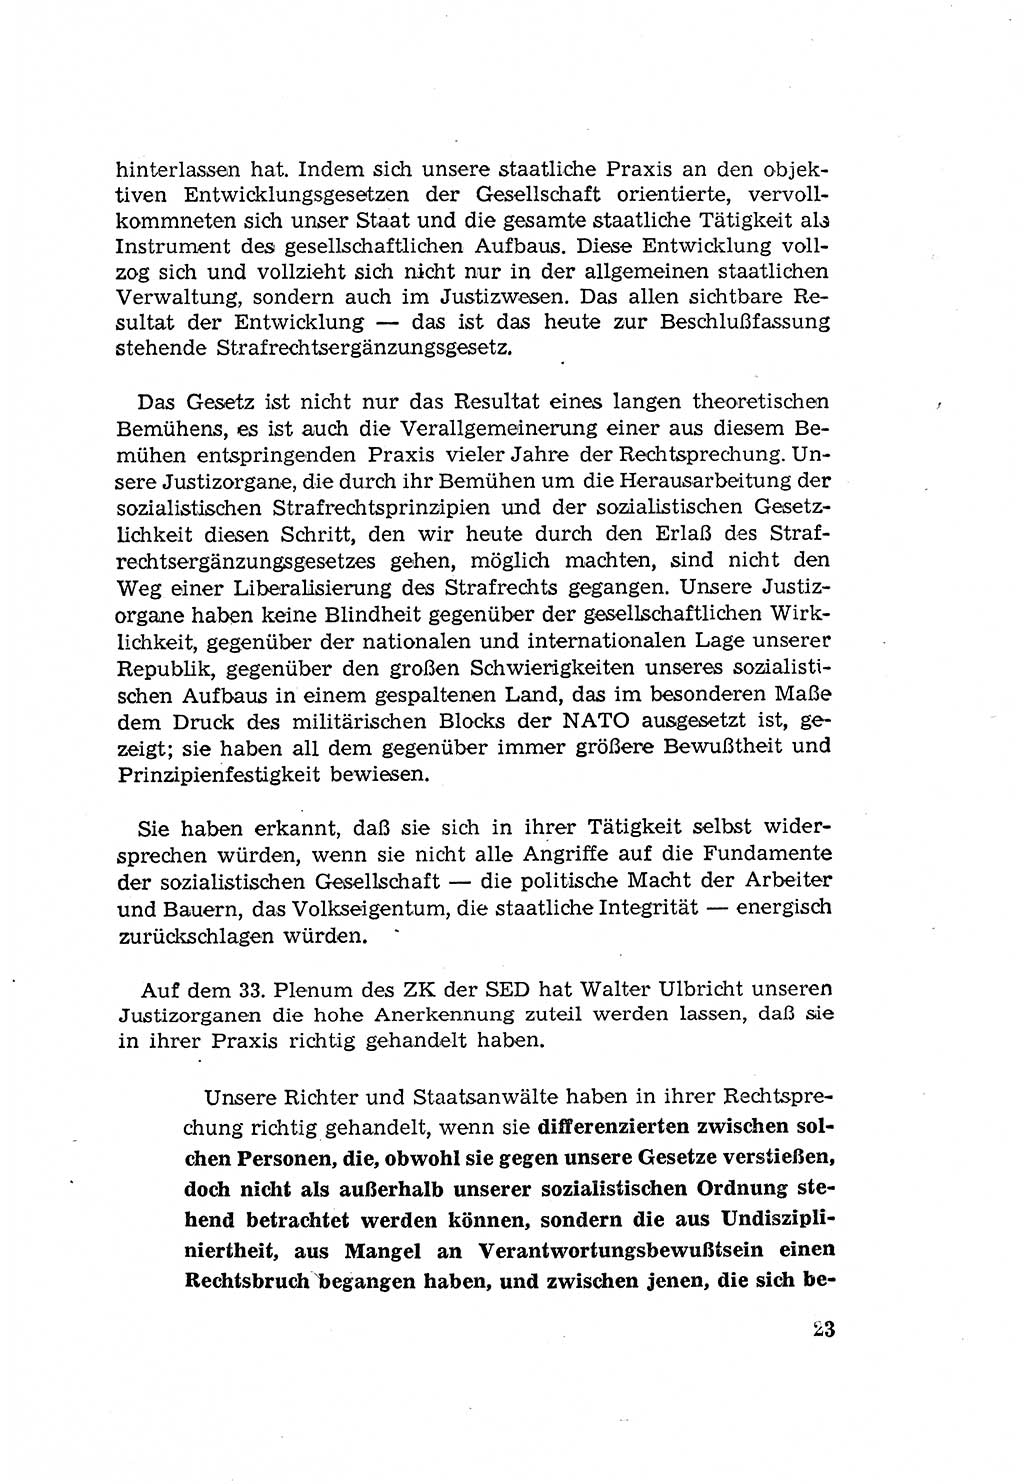 Zum Erlaß des Gesetzes zur Ergänzung des Strafgesetzbuches (StGB), Strafergänzungsgesetz (StEG) [Deutsche Demokratische Republik (DDR)] 1957, Seite 23 (StGB StEG DDR 1957, S. 23)